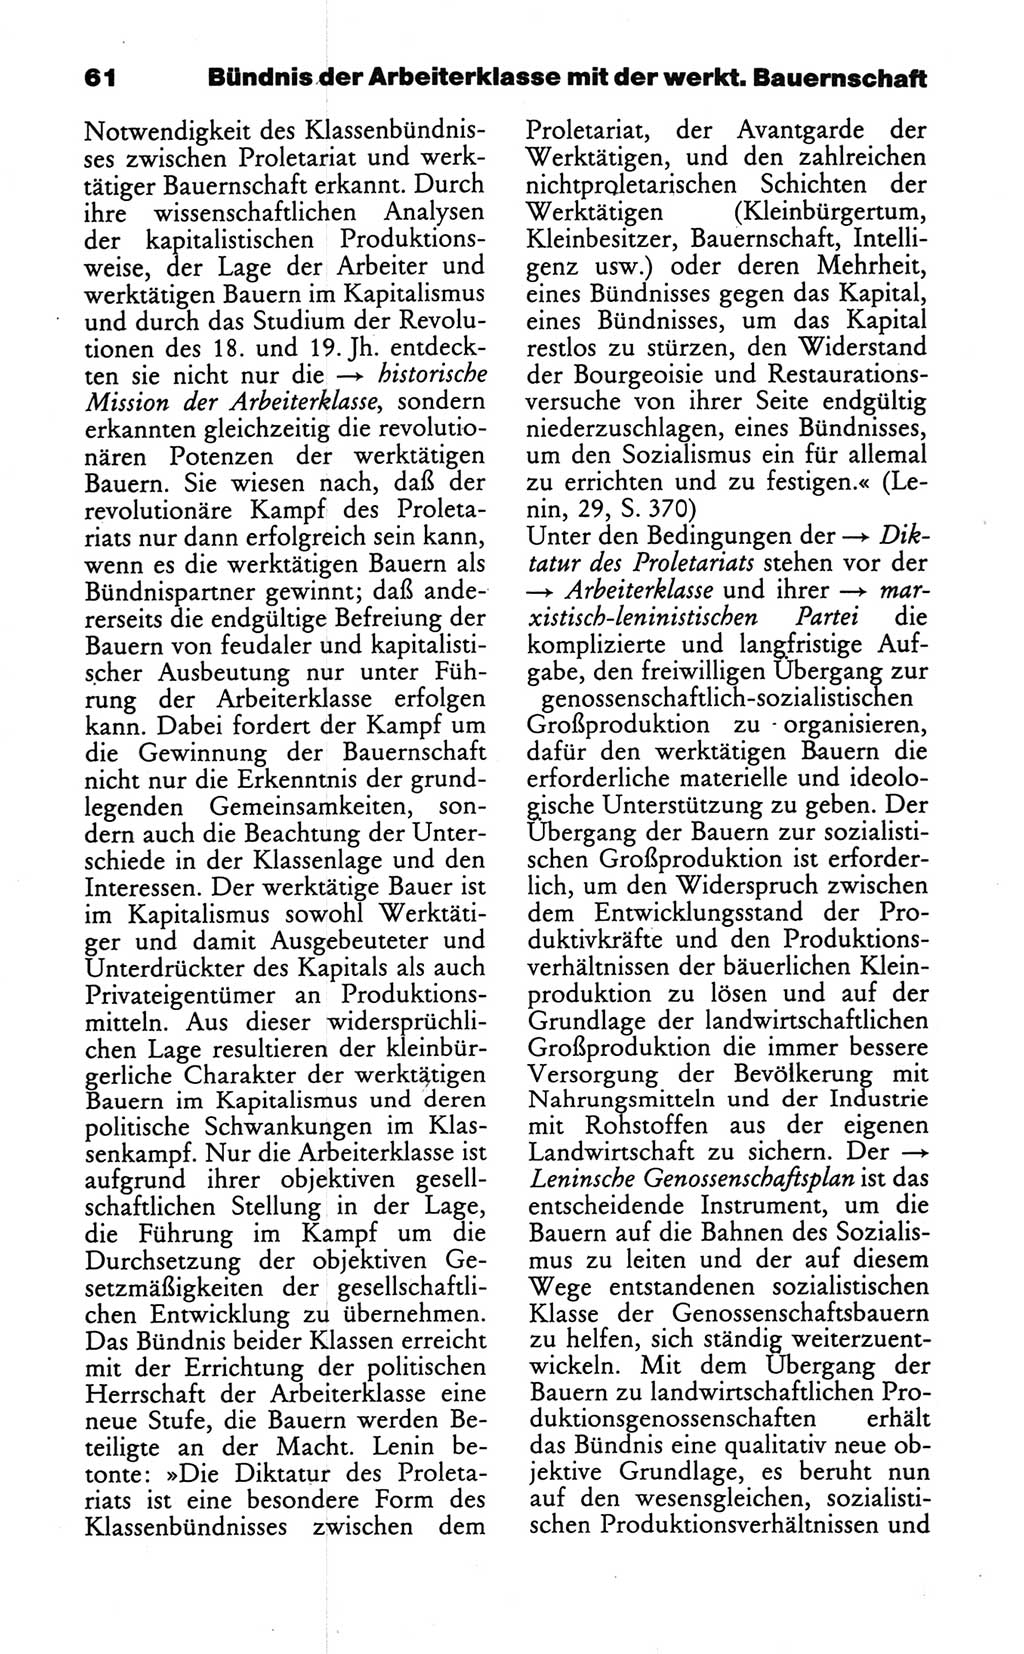 Wörterbuch des wissenschaftlichen Kommunismus [Deutsche Demokratische Republik (DDR)] 1986, Seite 61 (Wb. wiss. Komm. DDR 1986, S. 61)